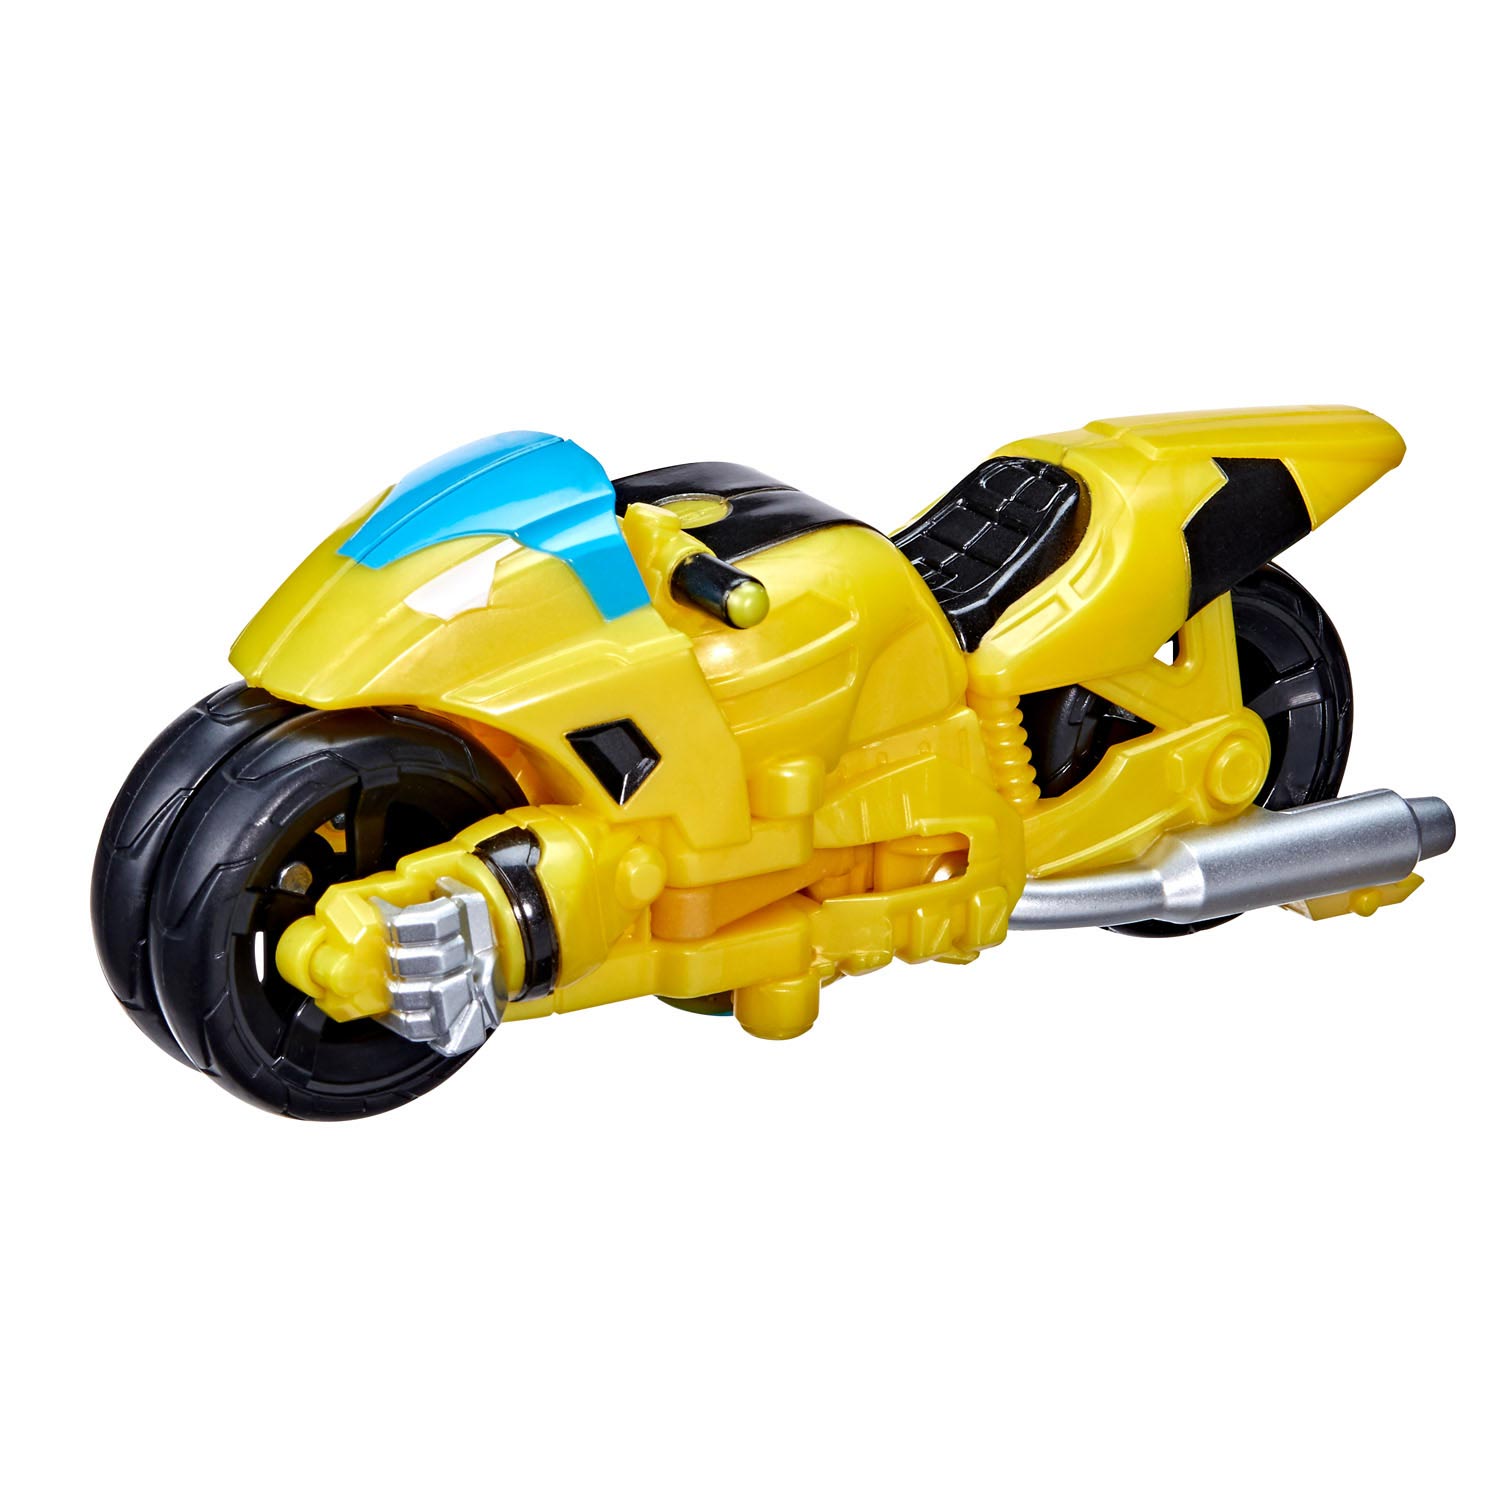 Hasbro Transformers Rescue Bots Academy Bumblebee Top Merken Winkel